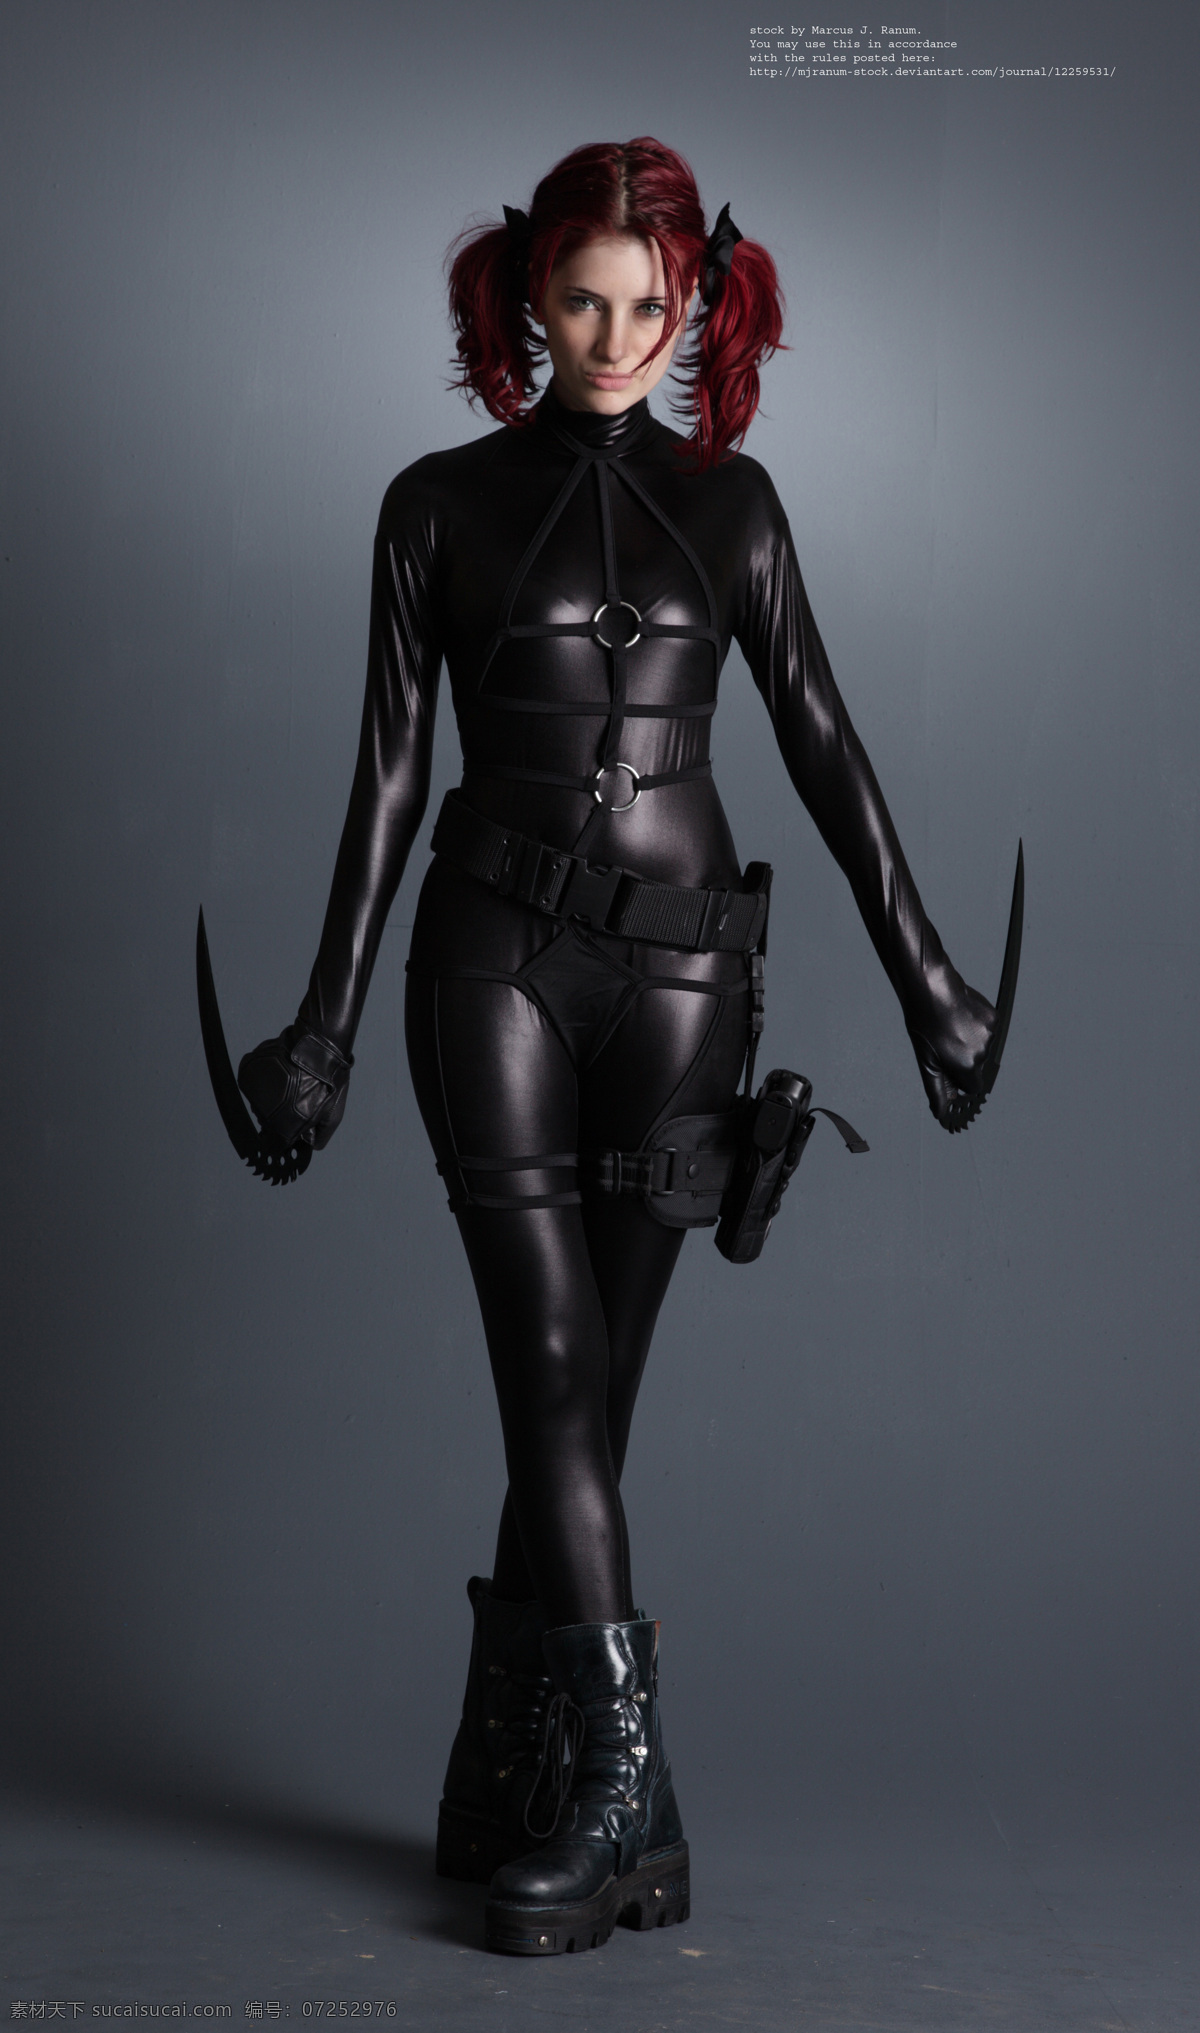 英伦 范 红 发 女郎 黑色 cosplay 英伦范 红发 束缚 战力 站立 艺 用人 体 姿态 高清 职业人物 人物图库